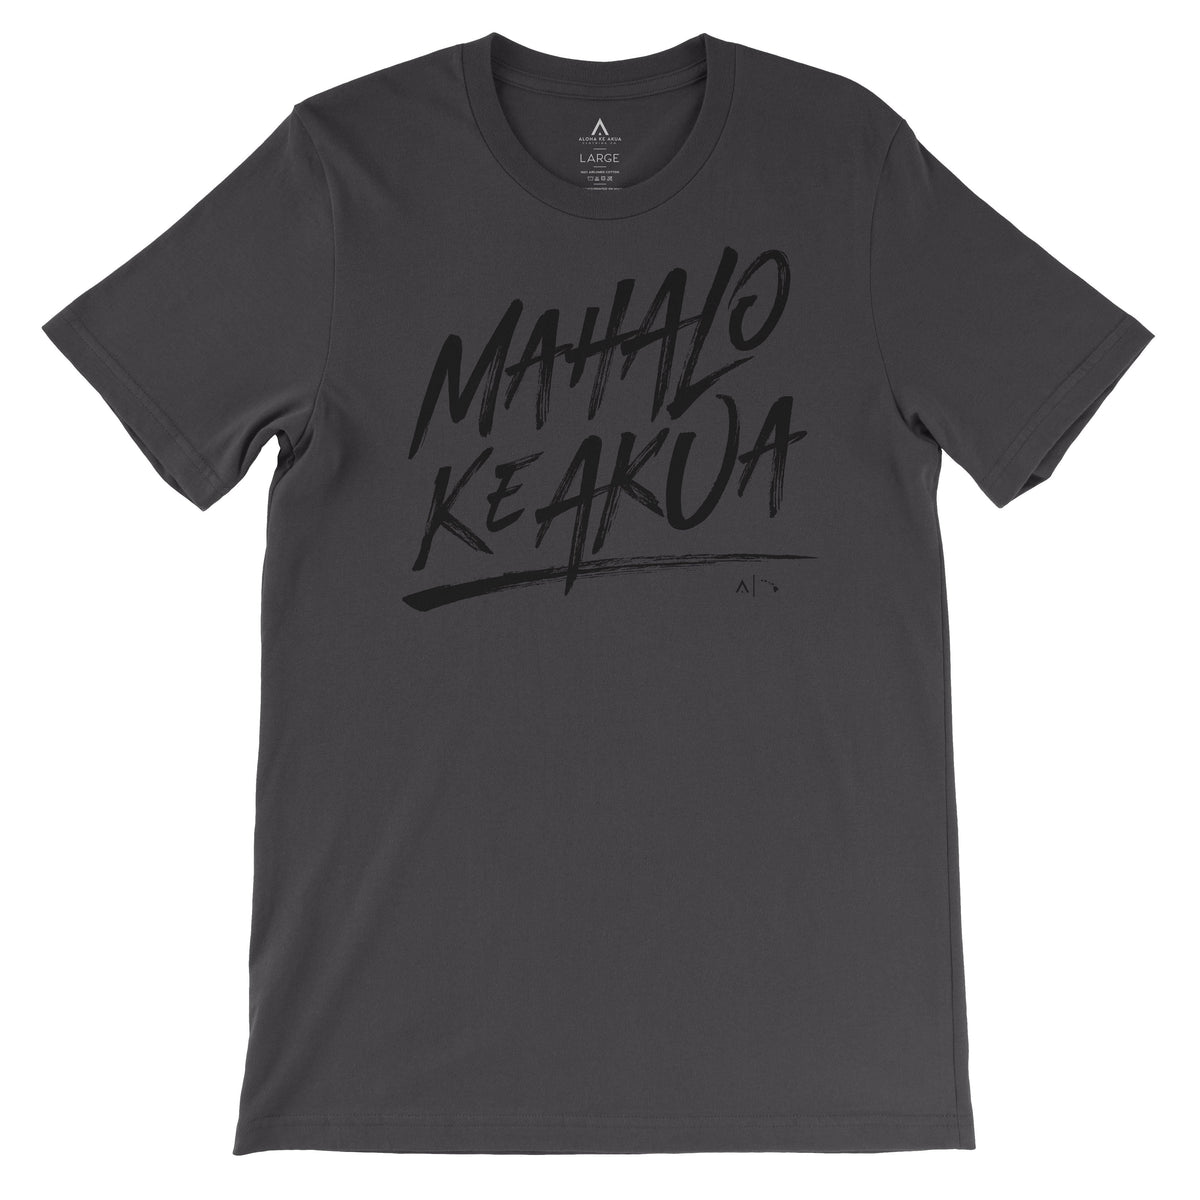 Pop-Up Mākeke - Aloha Ke Akua Clothing - Mahalo Ke Akua Men&#39;s Short Sleeve T-Shirt - Dark Gray - Front View